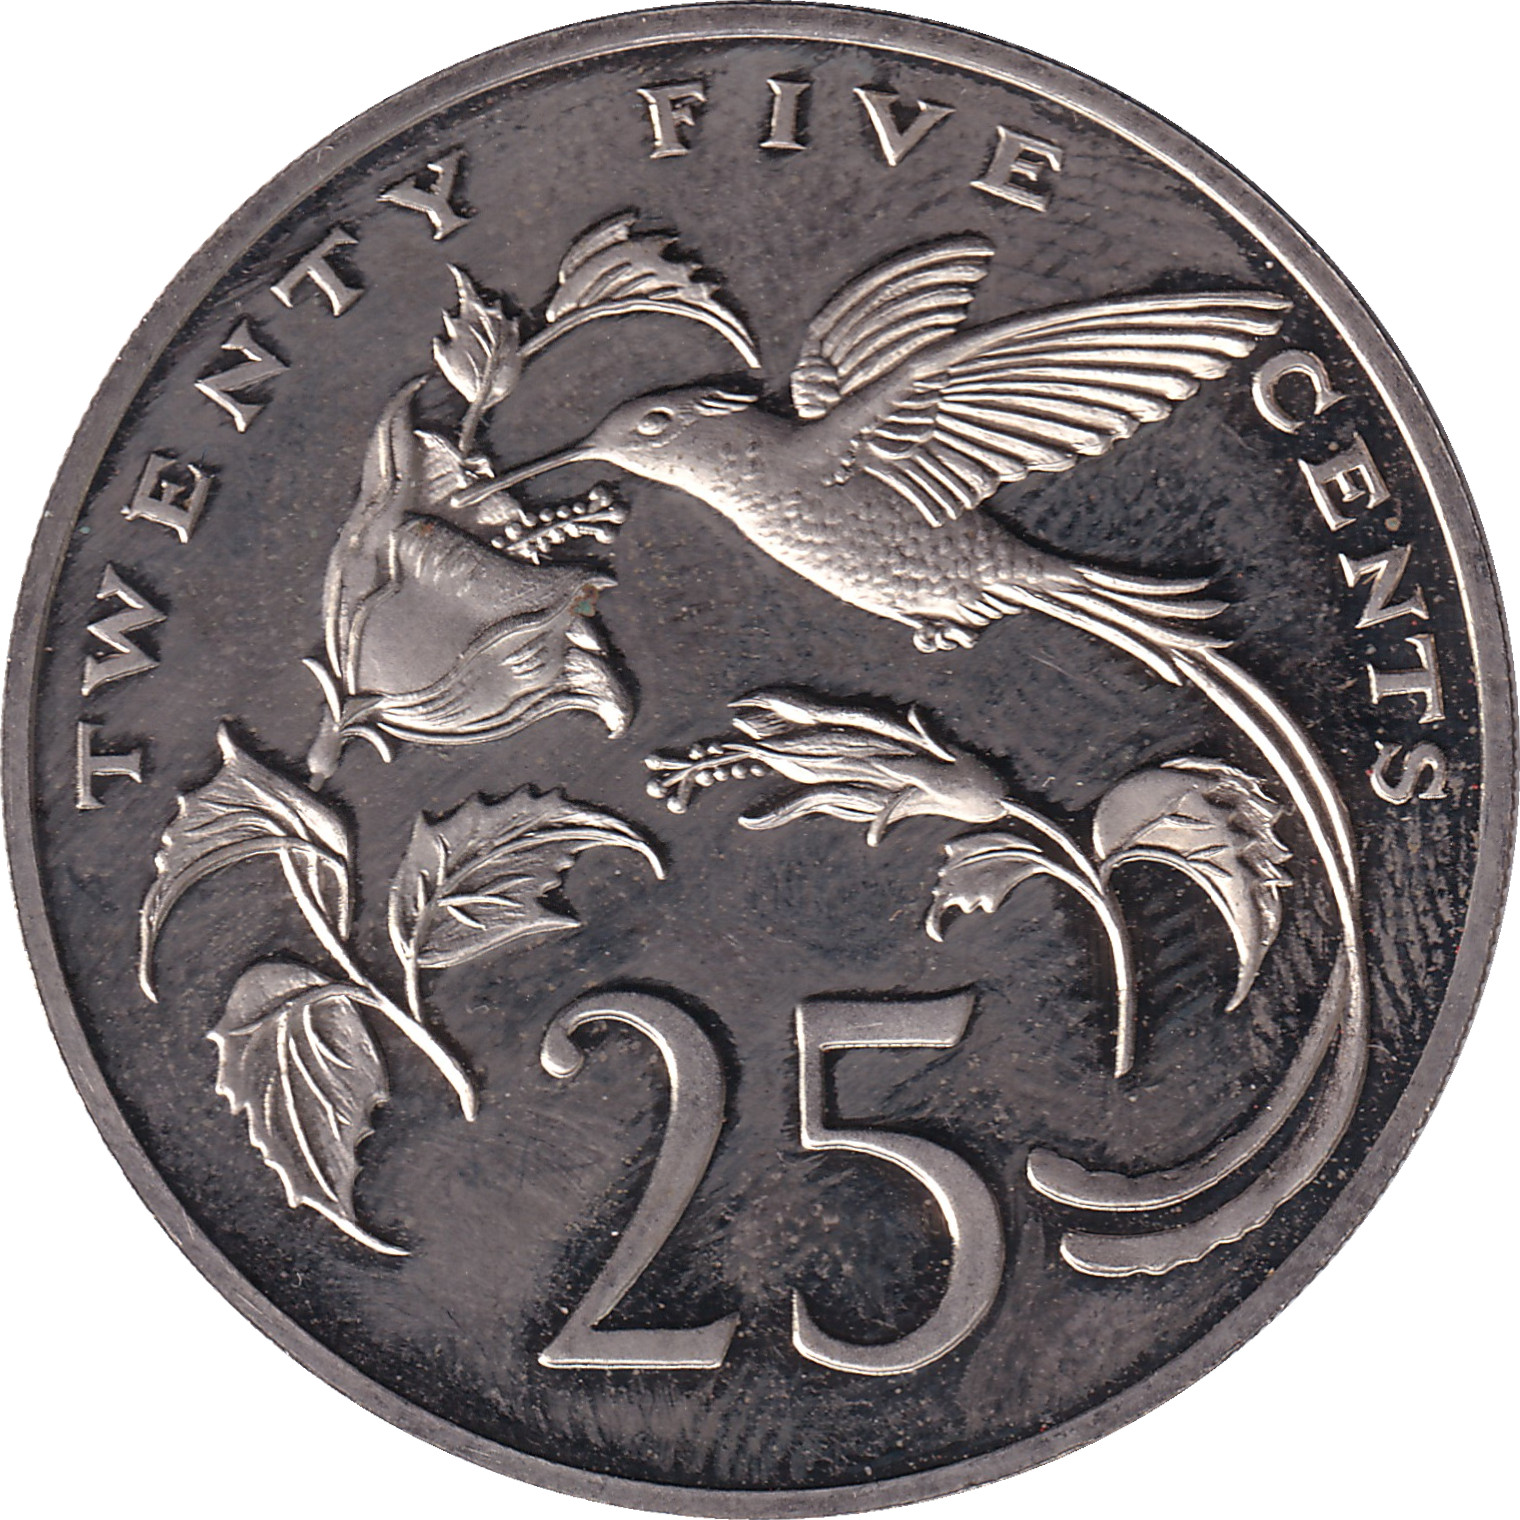 25 cents - Bird - Small legend